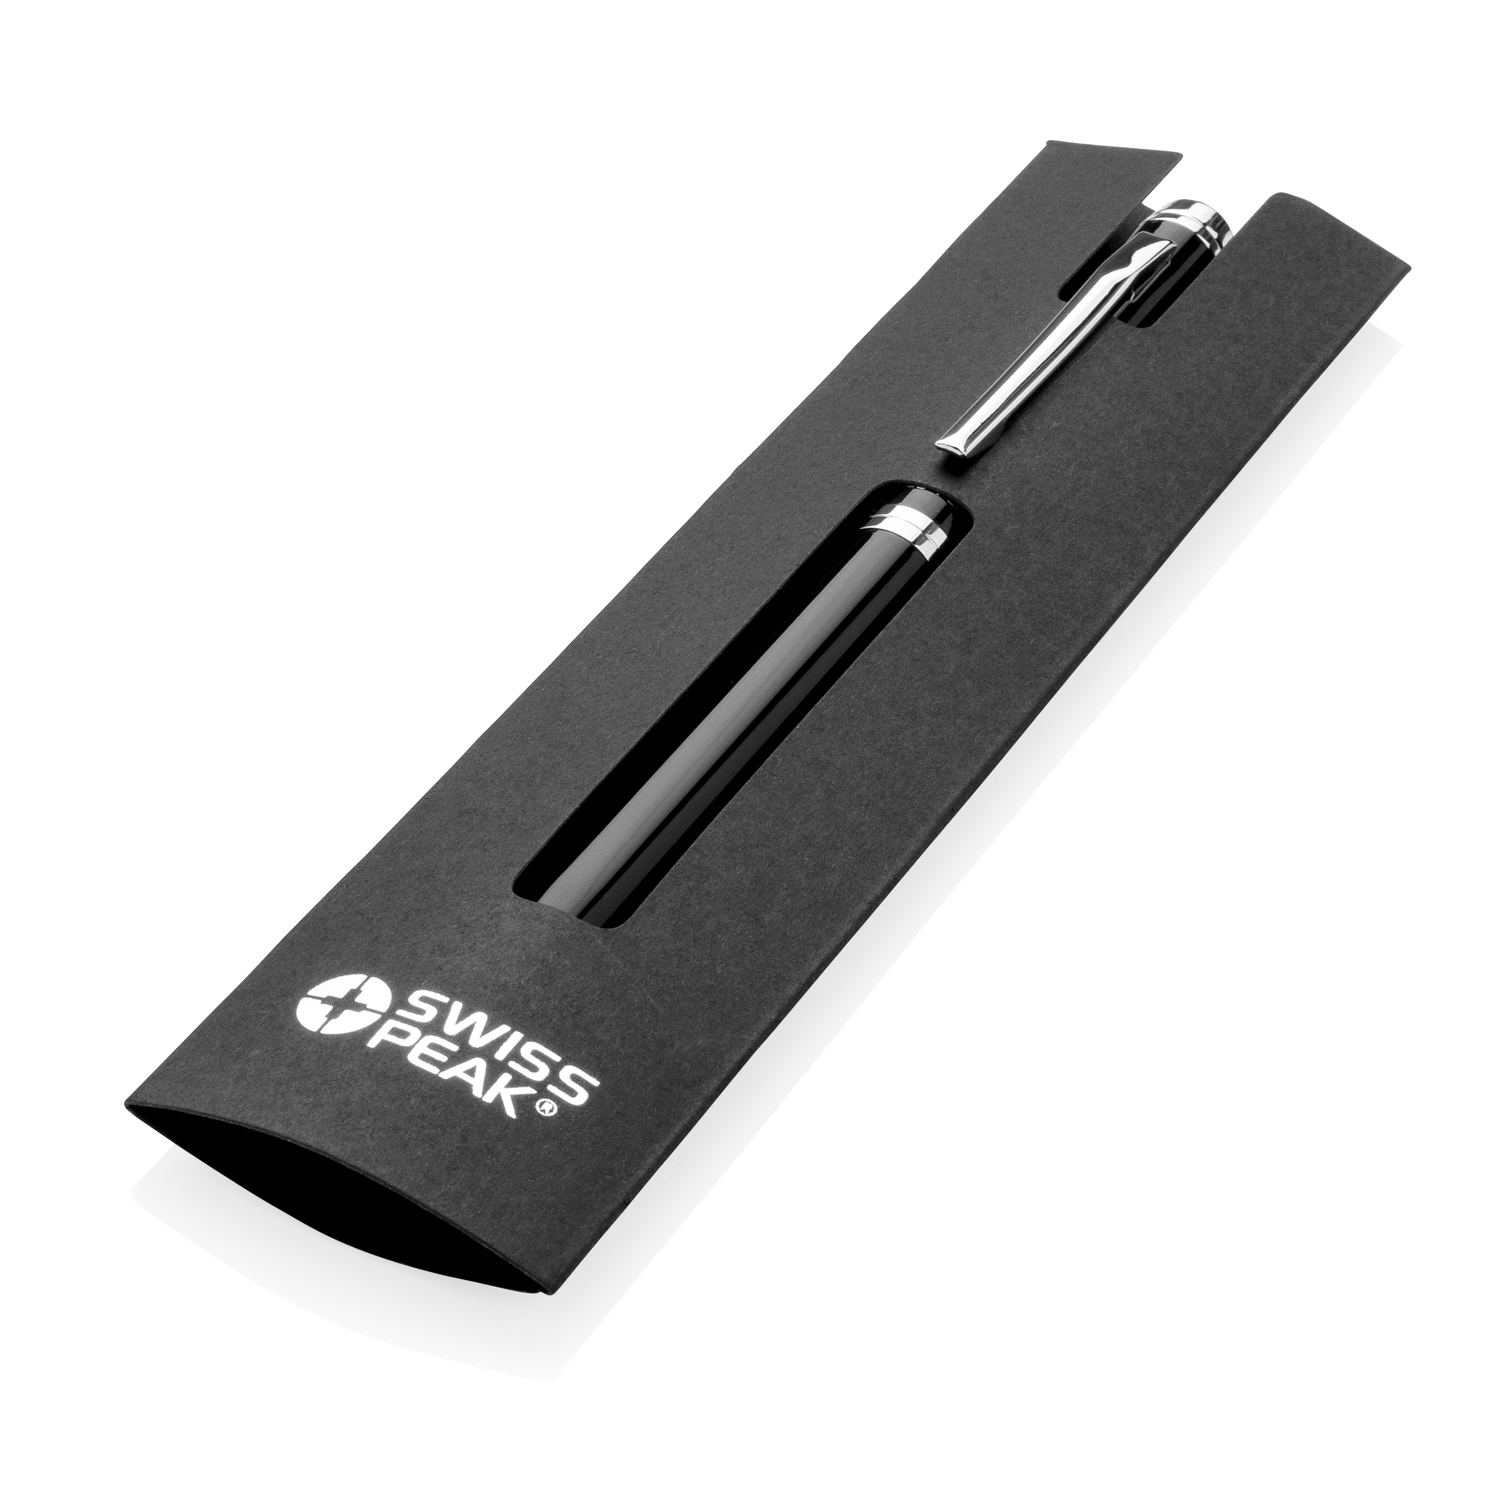 Ручка Swiss Peak Luzern, черный; серебряный, сталь; abs